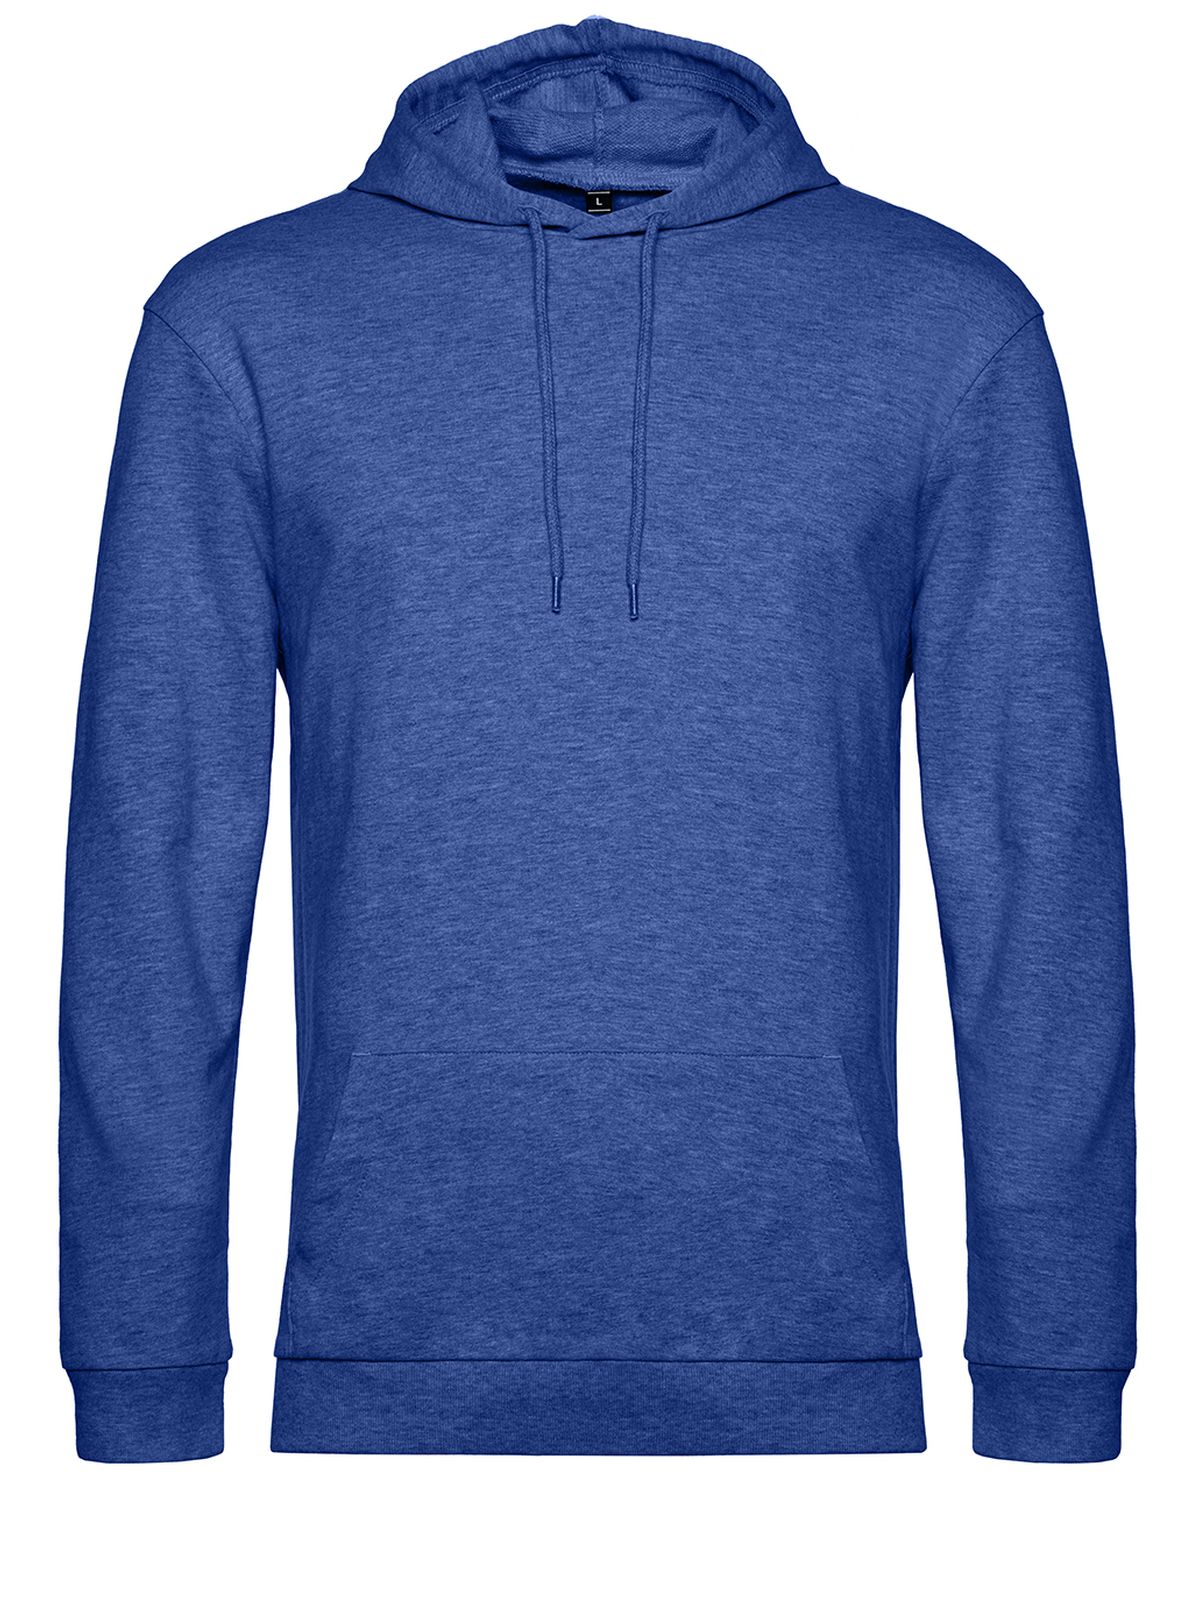 hoodie-heather-royal-blue.webp